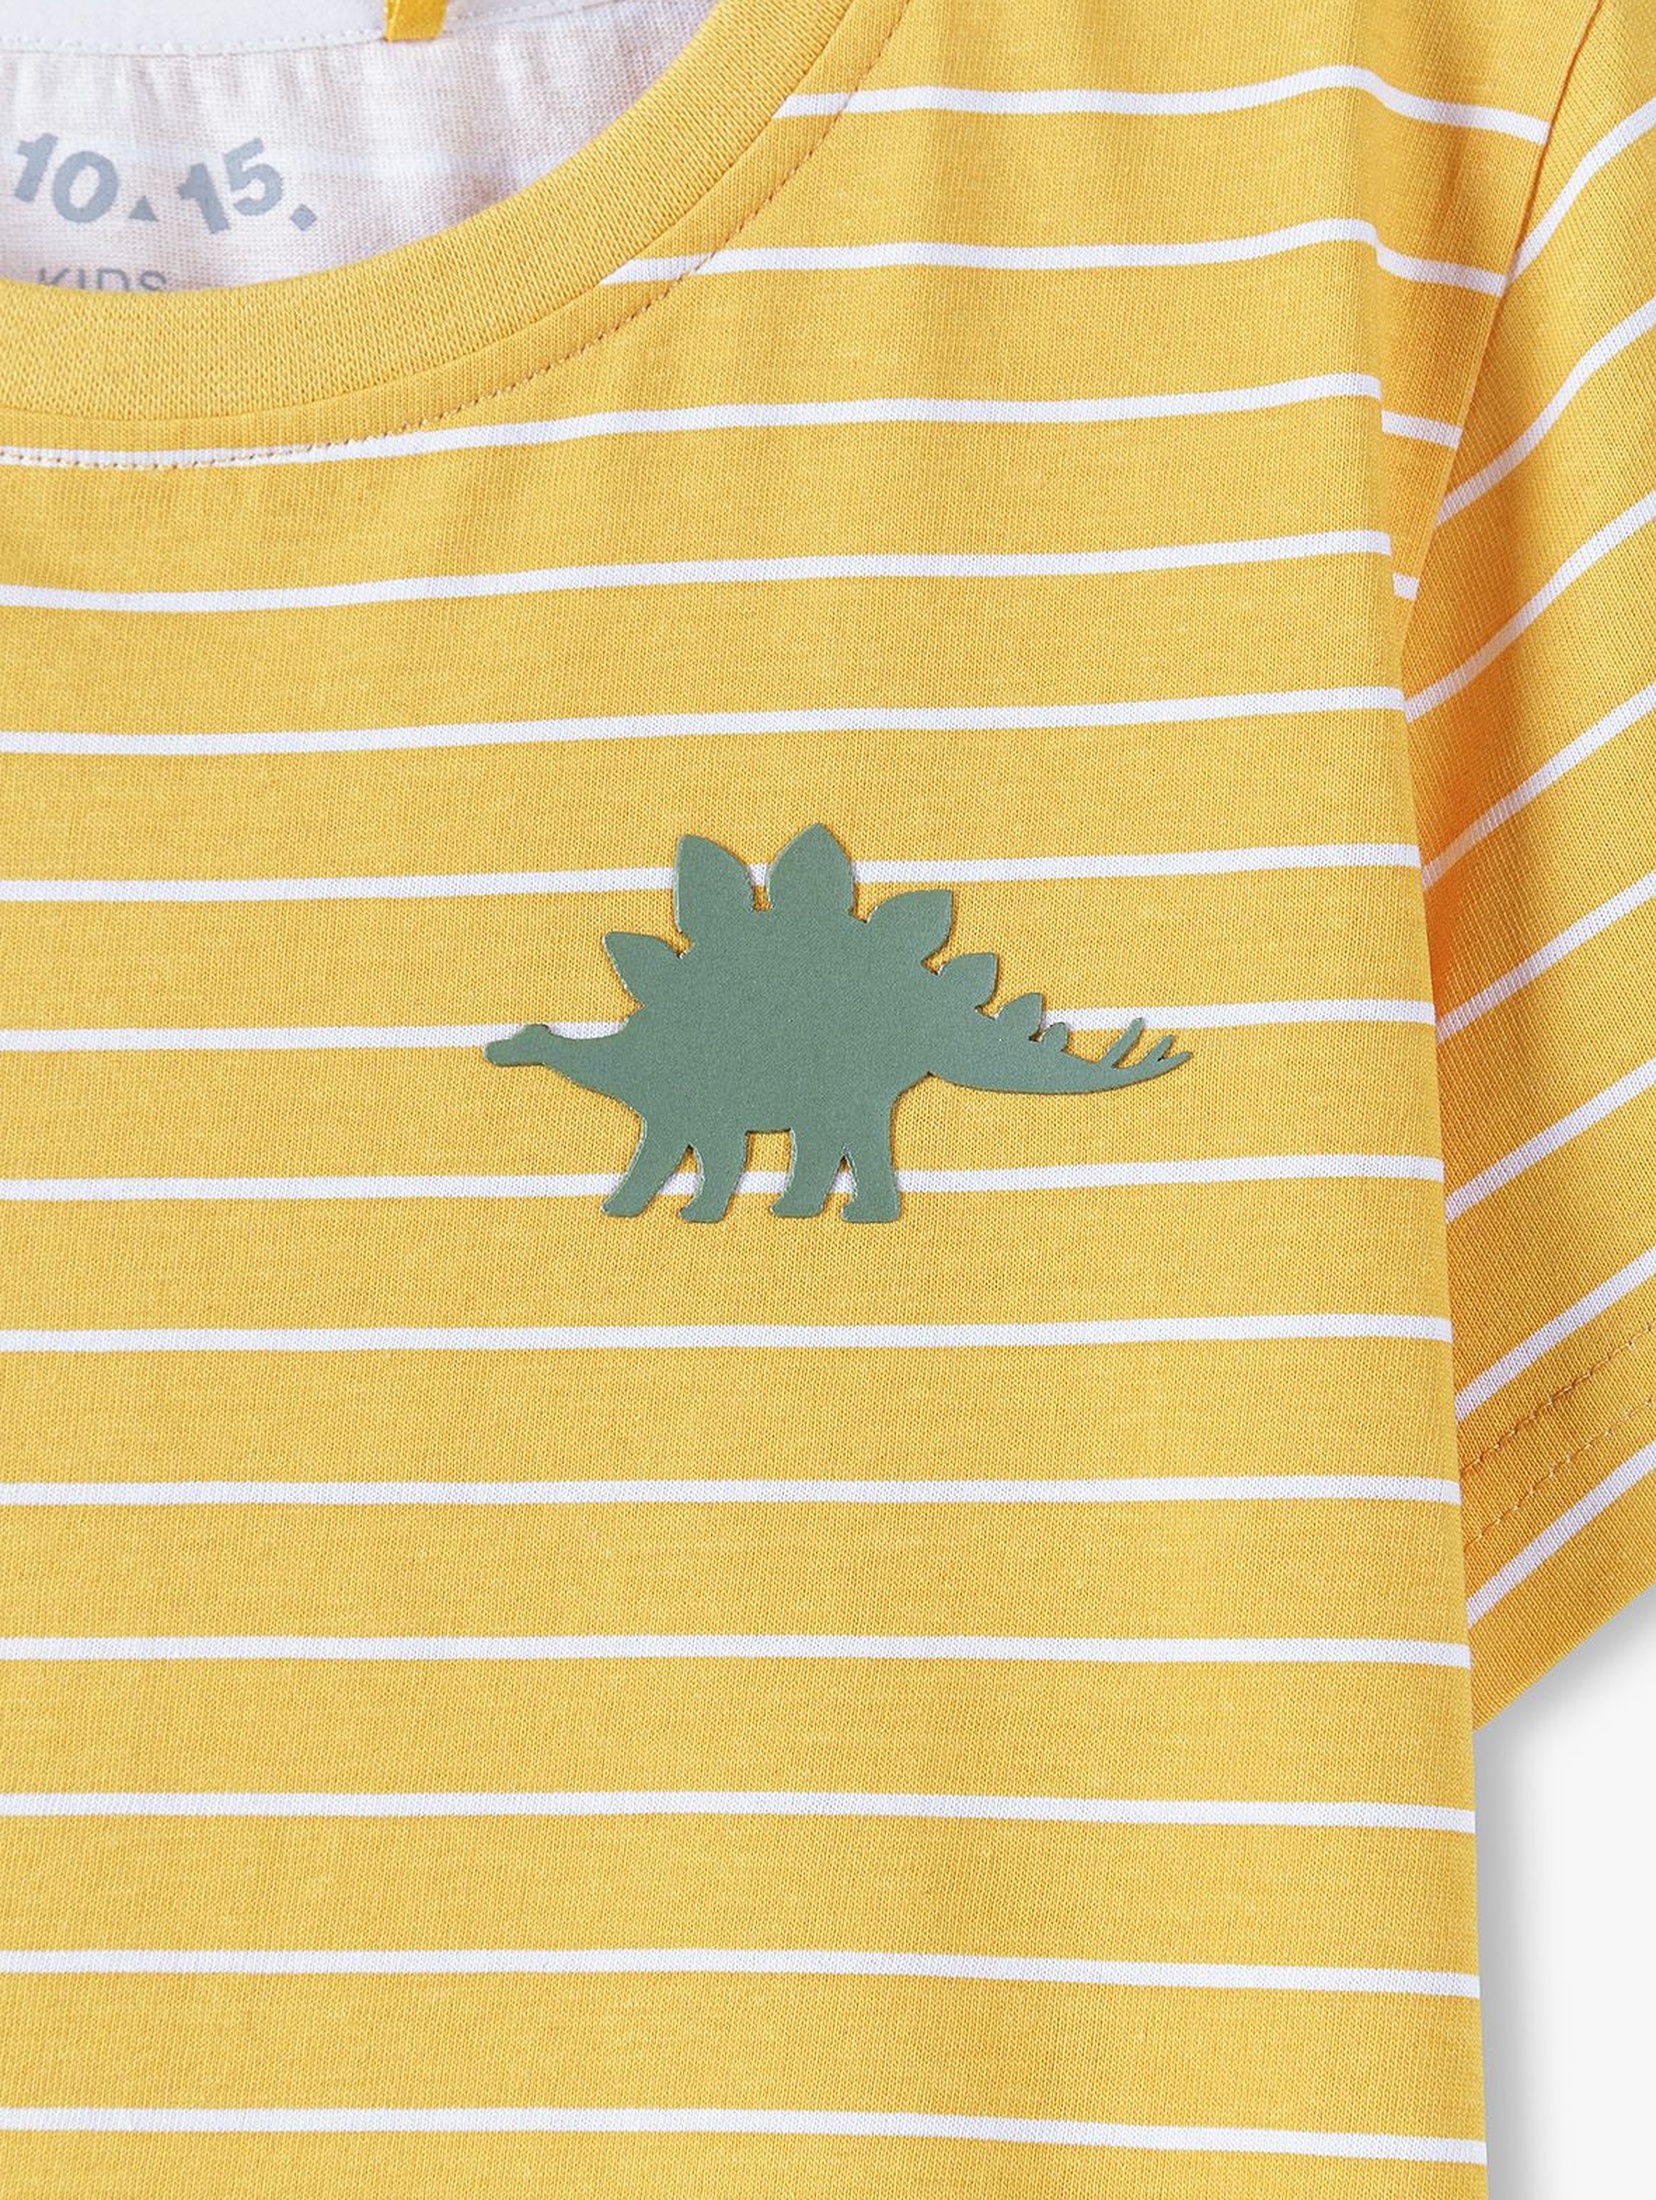 Bawełniany t-shirt chłopięcy w kolorze żółtym w paski Dino